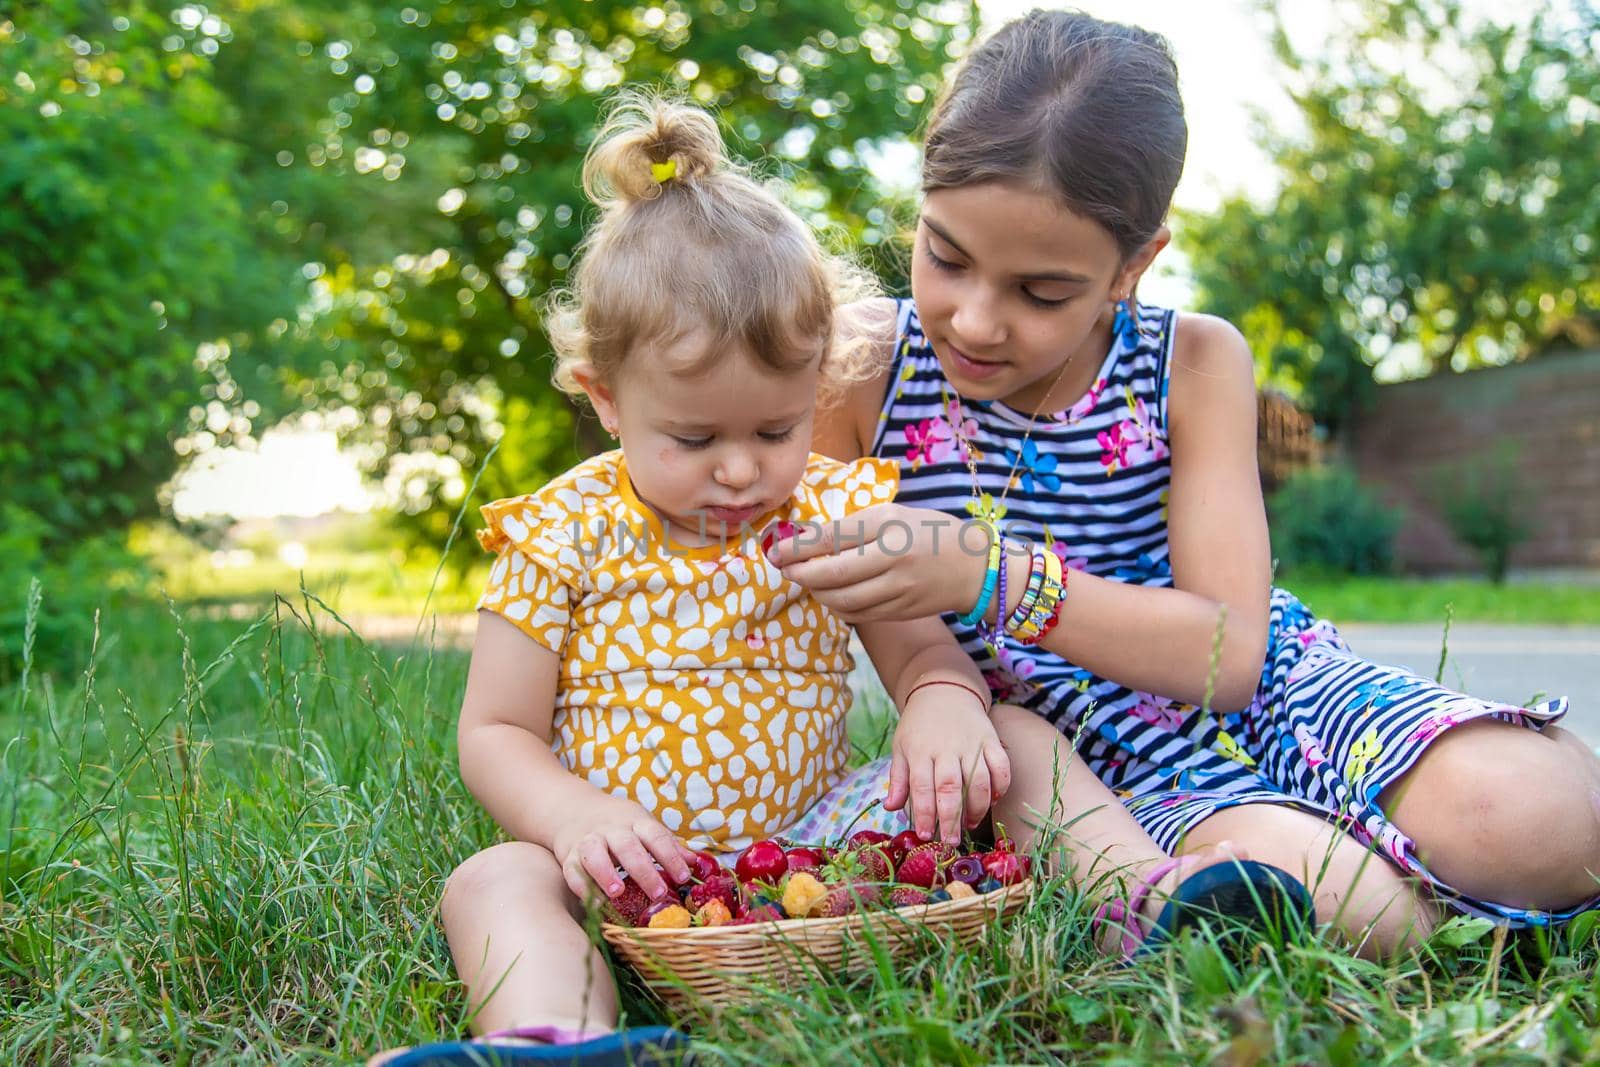 The child eats berries in the garden. Selective focus. Kid.